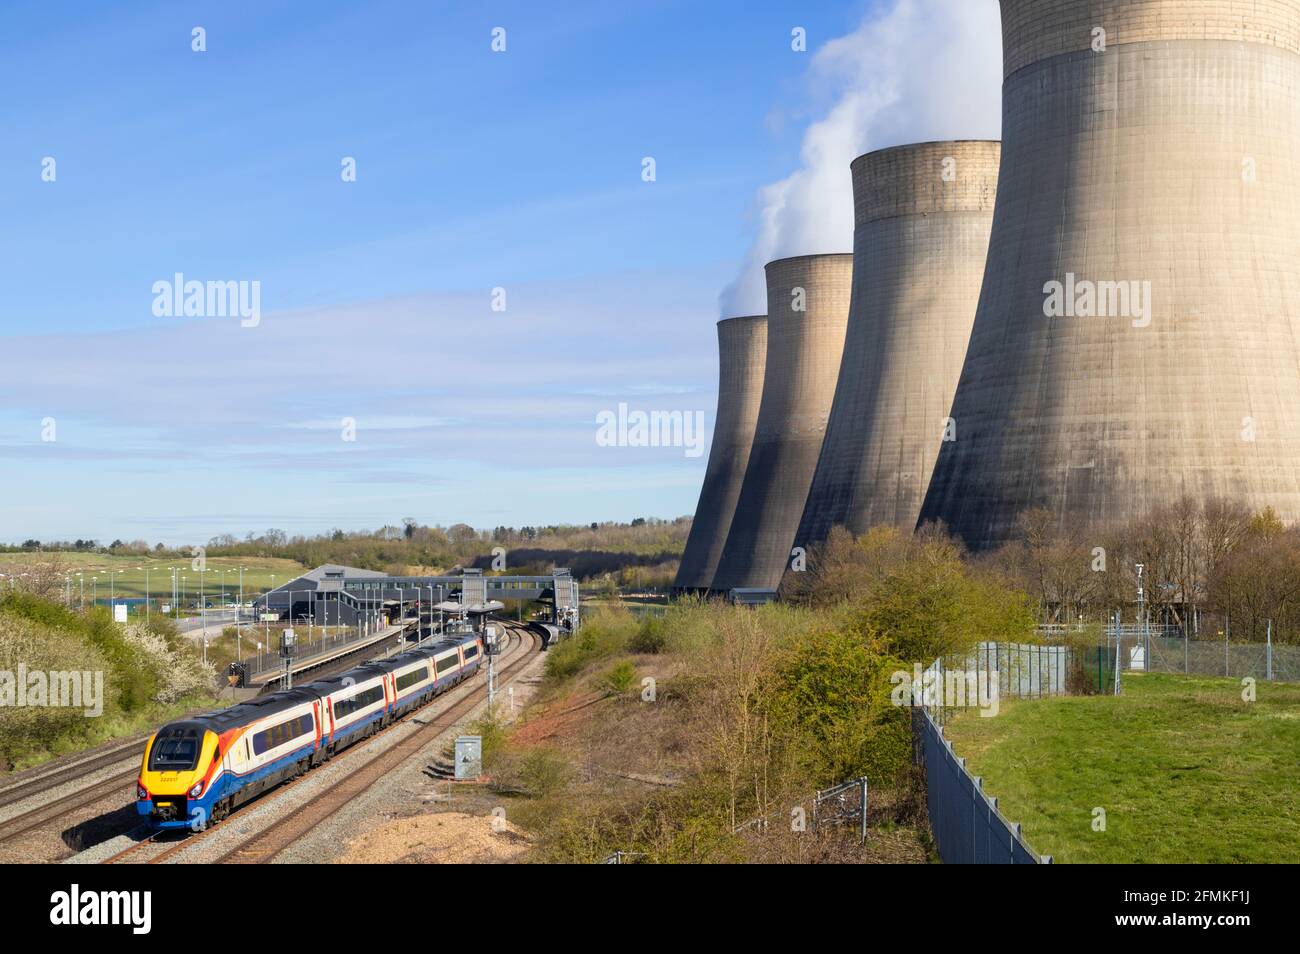 Centrale à charbon Ratcliffe-on-Soar avec tours de refroidissement et un train à la station East Midlands Parkway Ratcliffe on Soar Notinghamshire Angleterre Banque D'Images